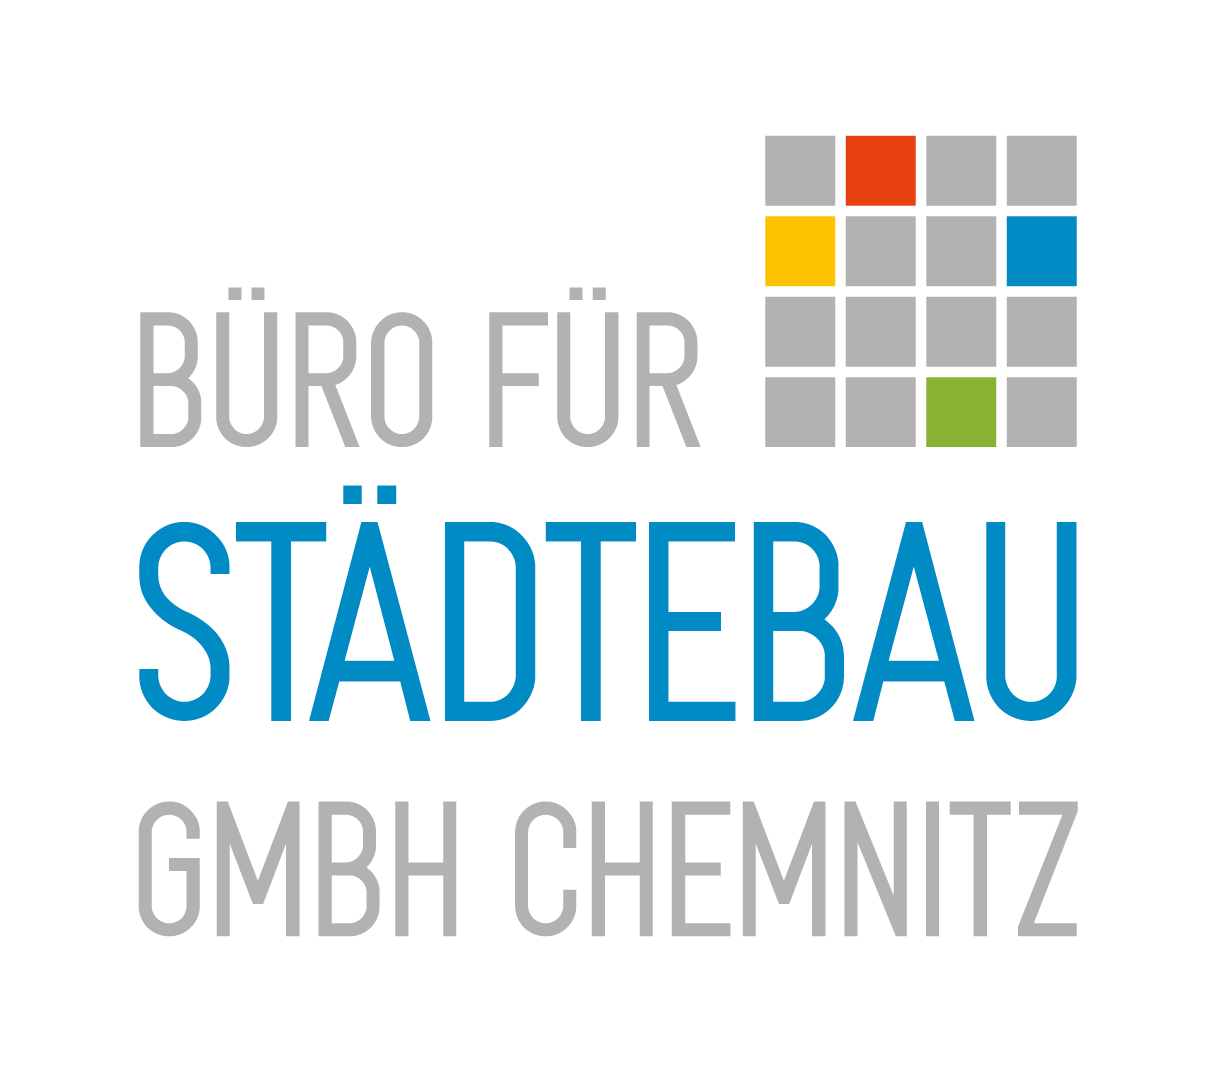 (c) Staedtebau-chemnitz.de